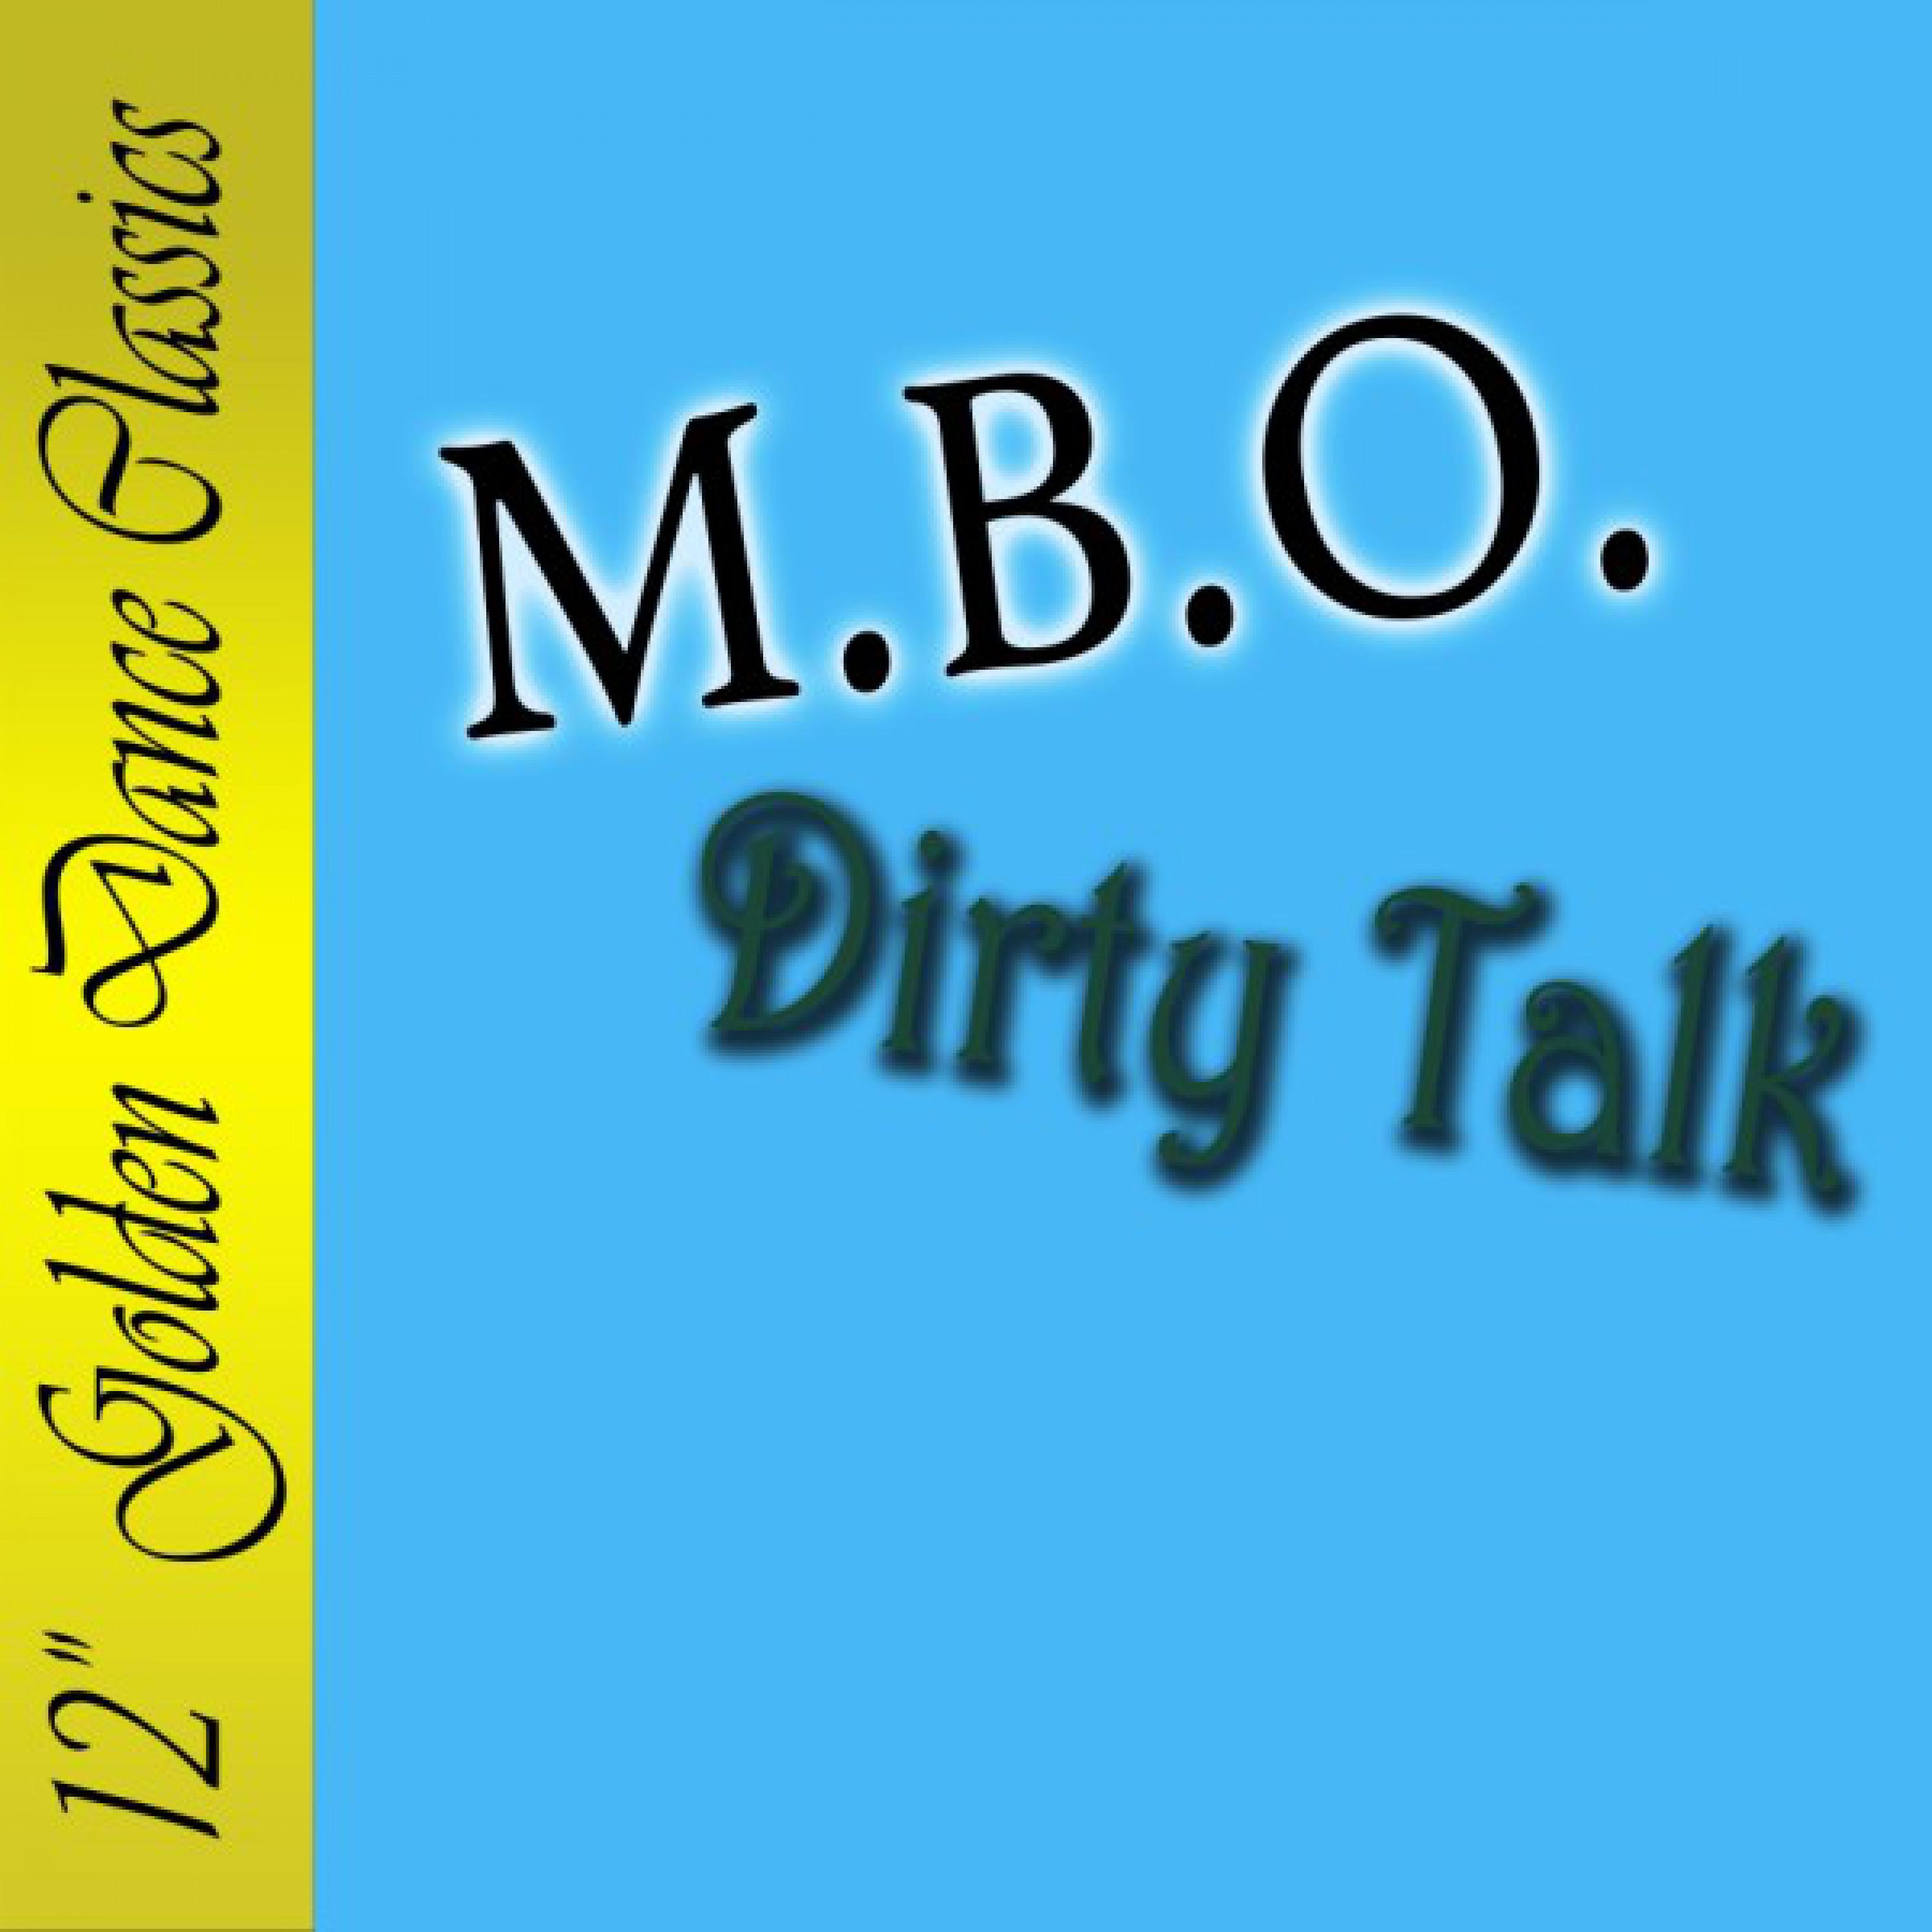 Dirty Talk "2002" (Cosmic-Dub-Mix)